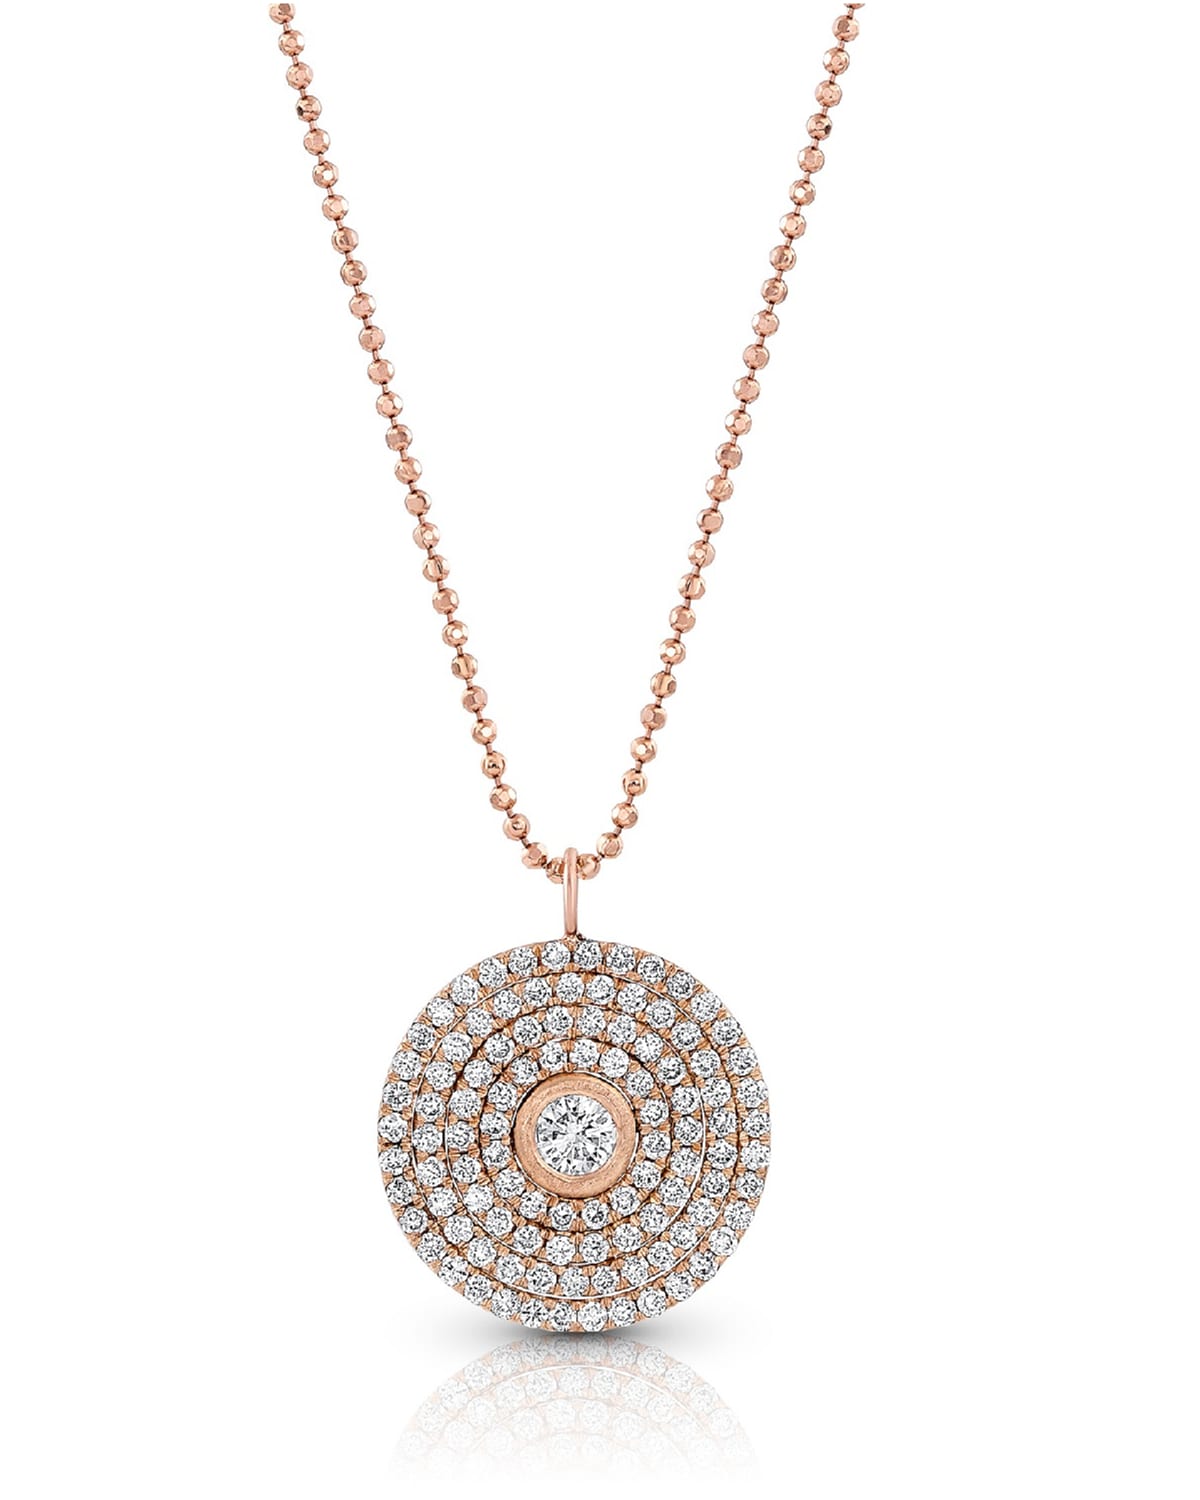 Dominique Cohen 18k Rose Gold Mosaic Diamond Pendant Necklace (Large)